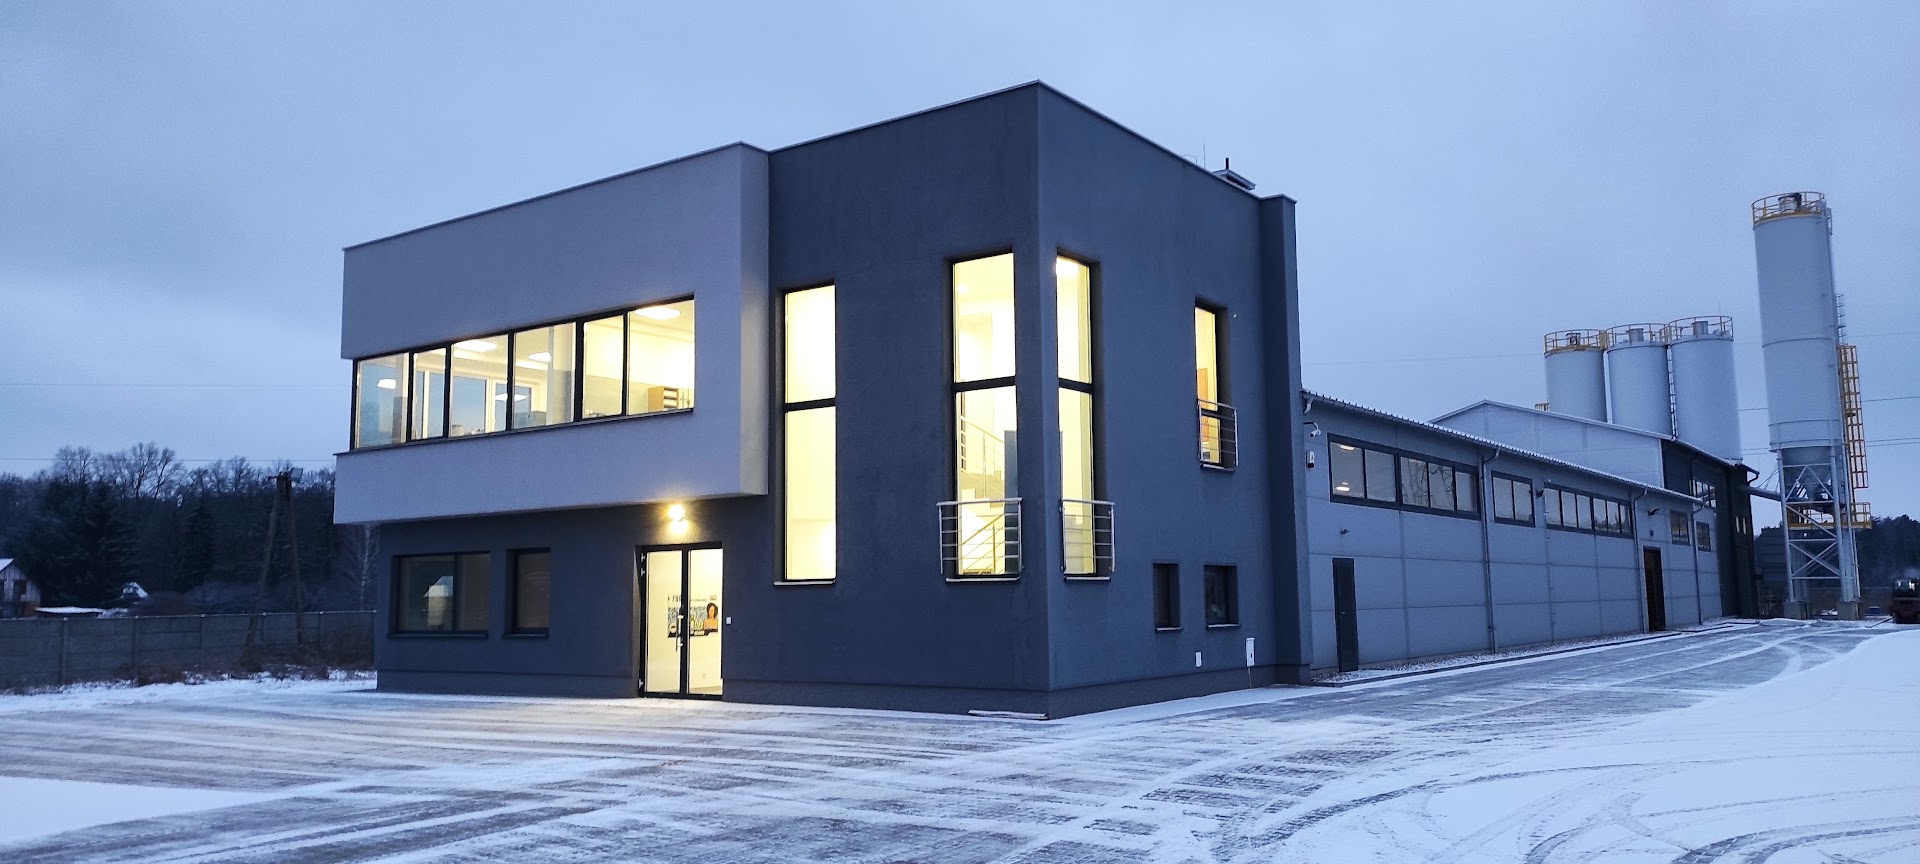 Selena otworzyła nowoczesną fabrykę chemii budowlanej w Węgrowie